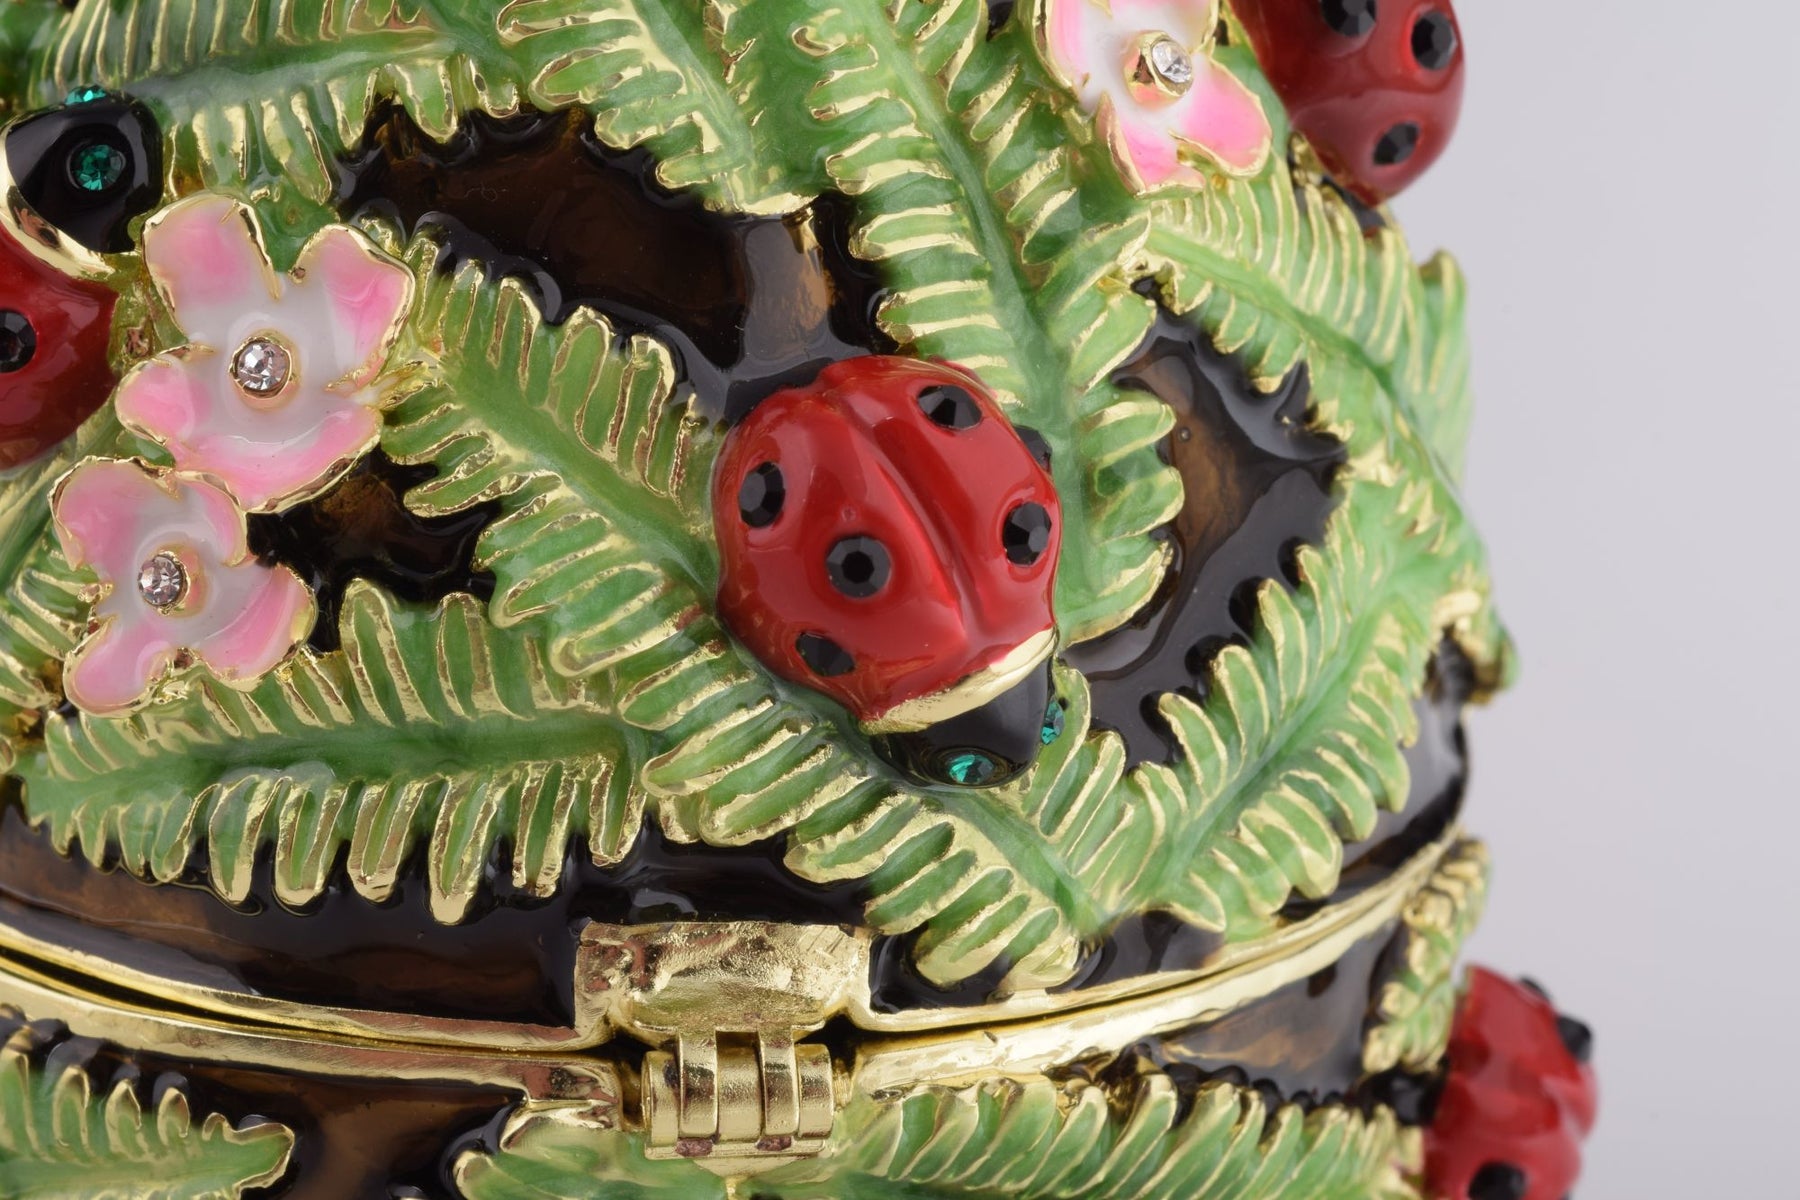 Musique verte Jouer Egg Fabergé avec Ladybird Beetles Coccinelles